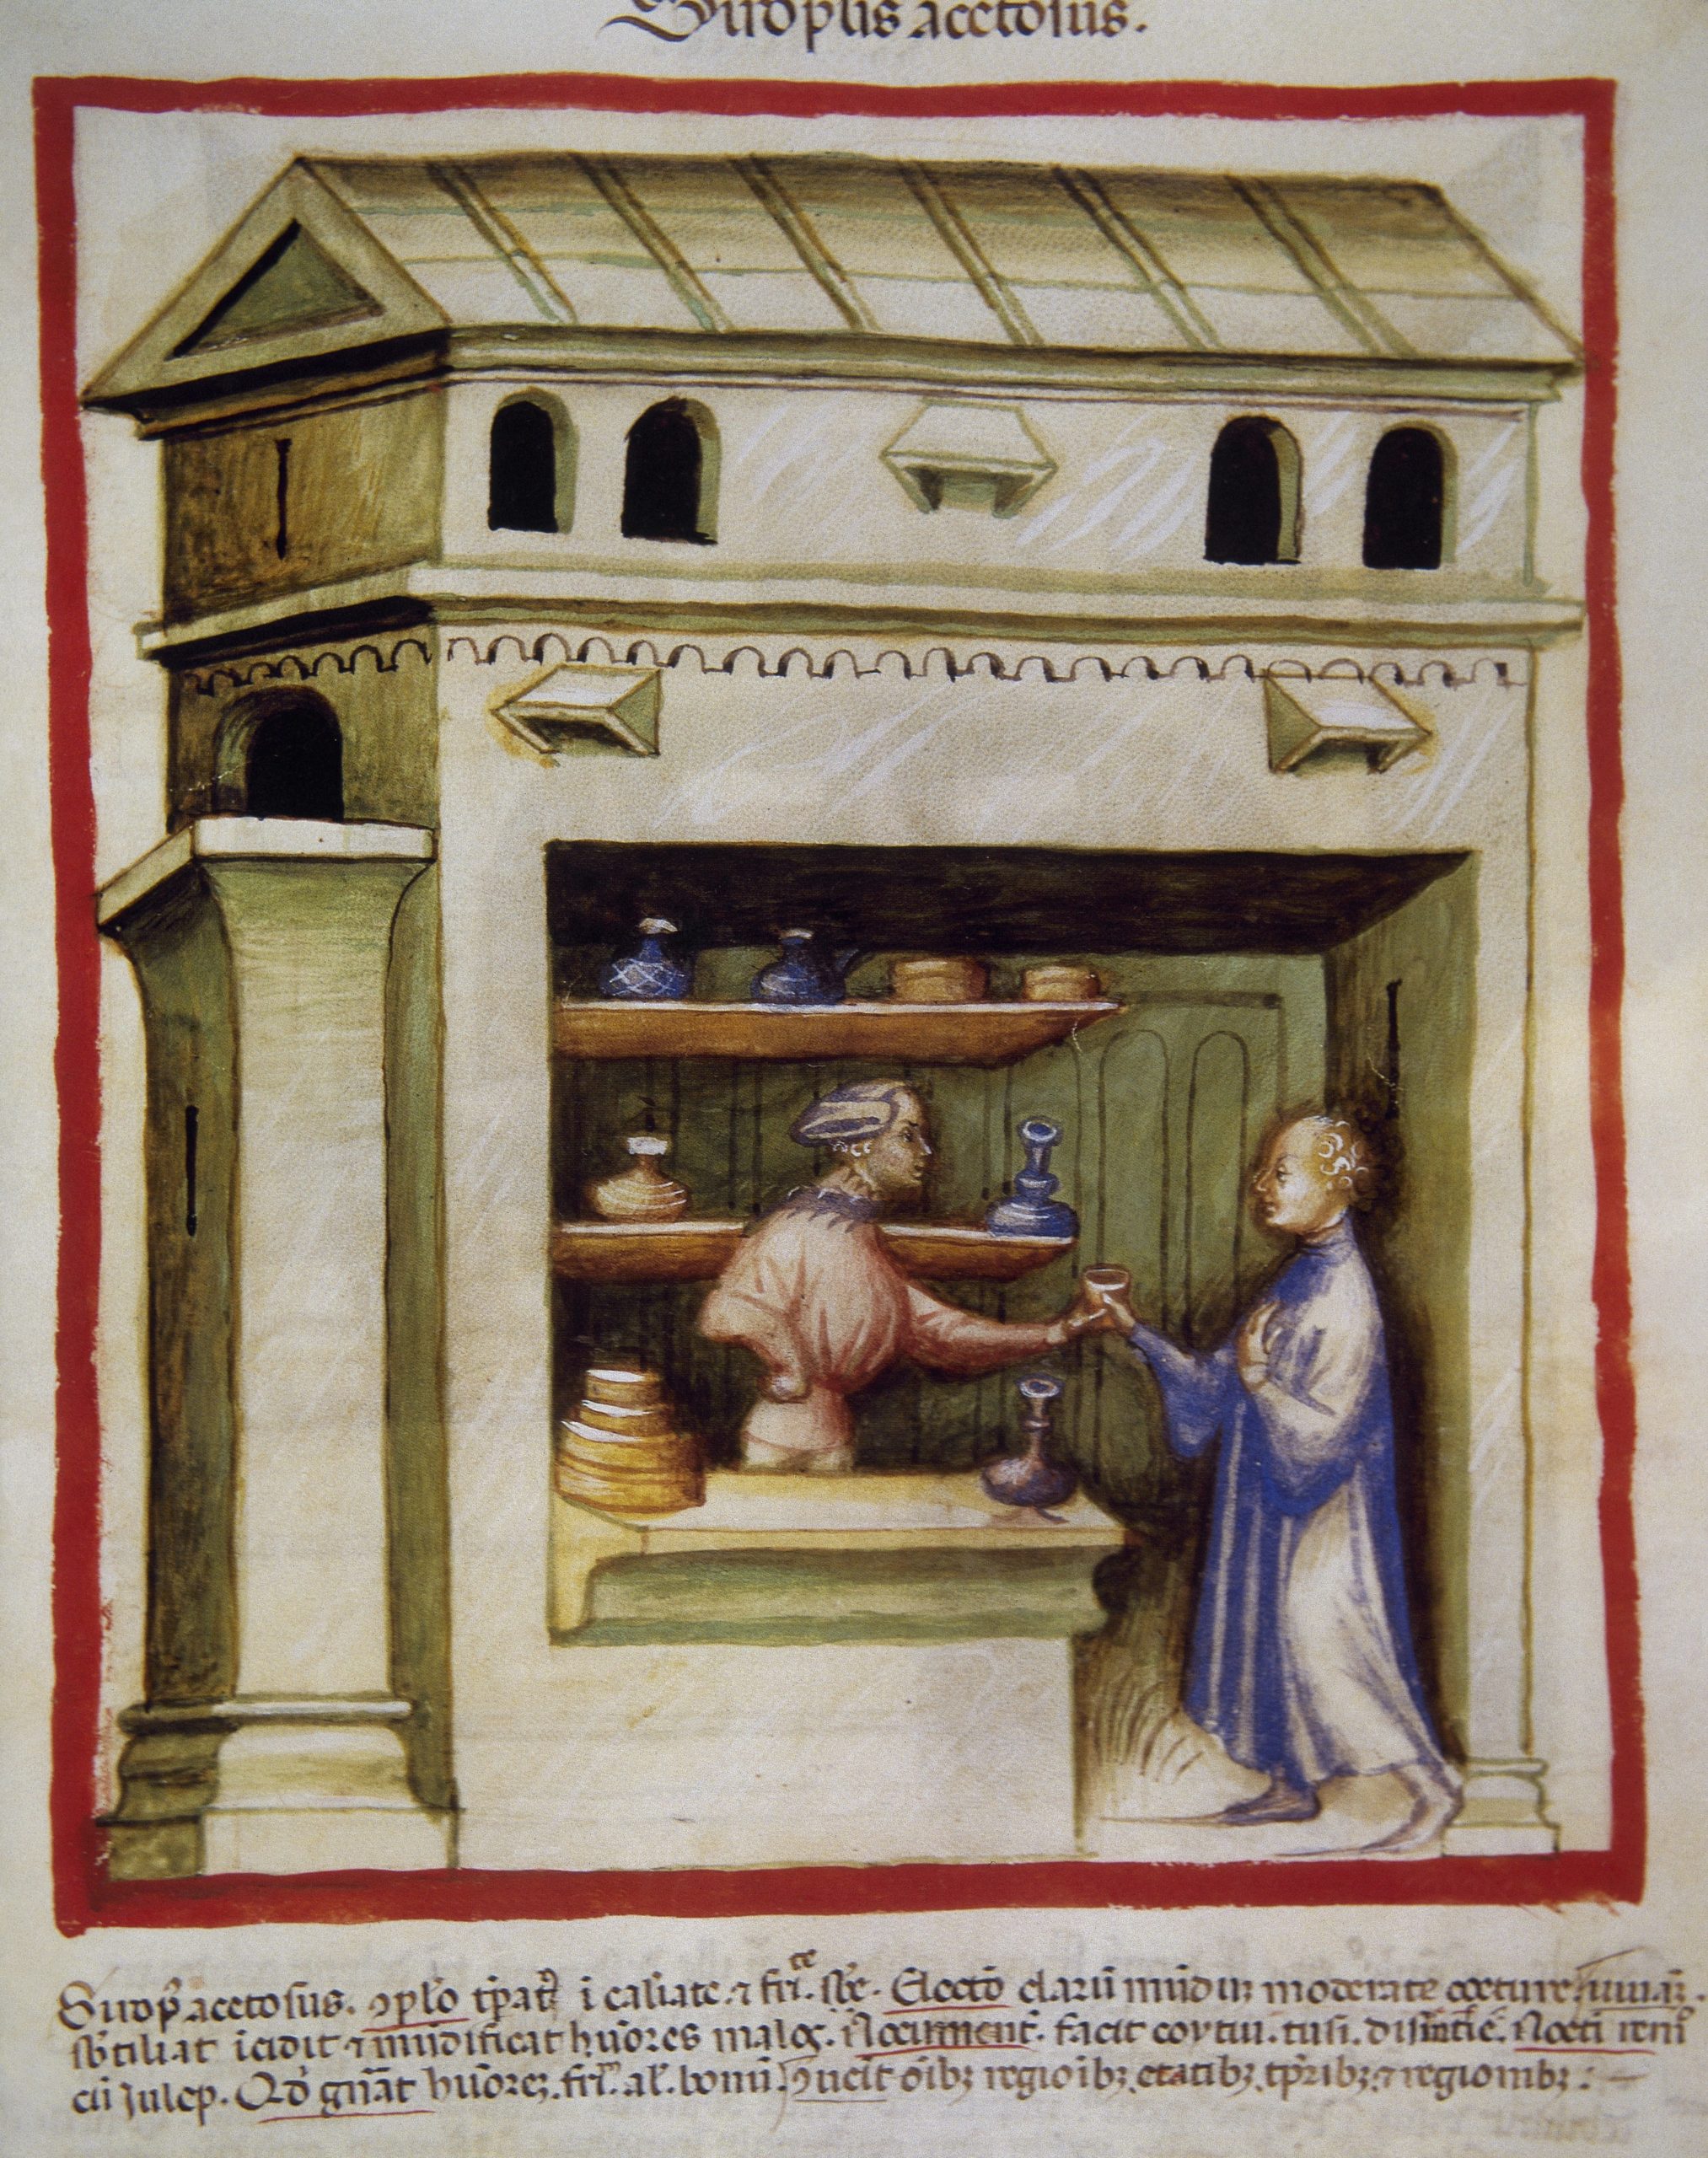 Pintura colorida de uma farmácia medieval do livro Tacuinum sanitatis. Há dois homens segurando um frasco e diversas prateleiras.